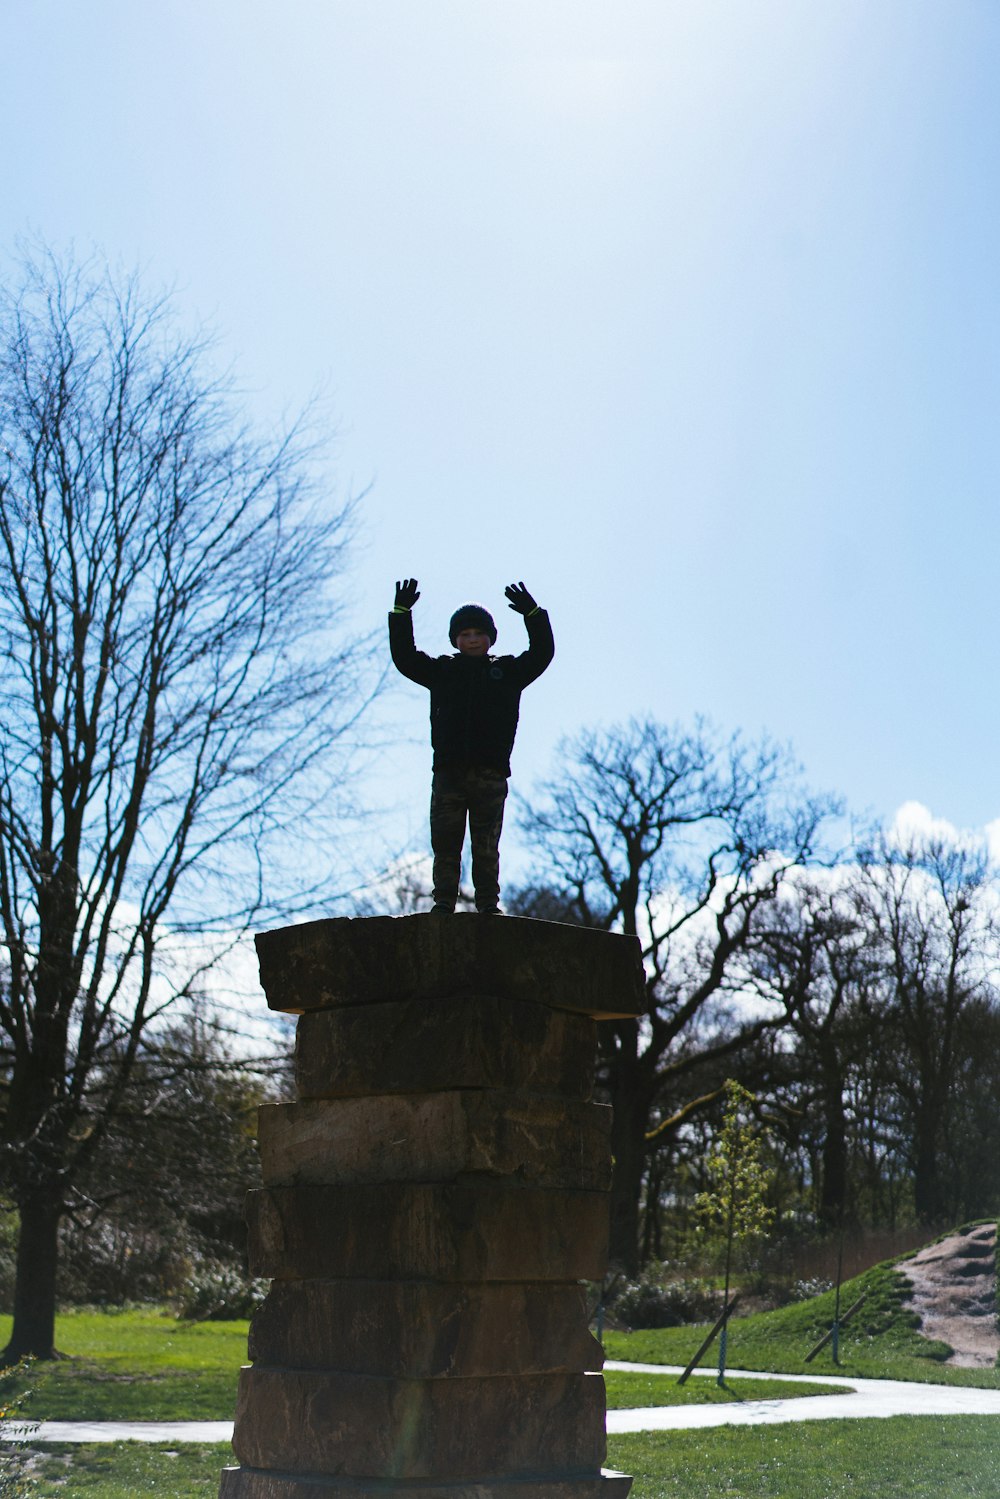 Un hombre de pie en la cima de una estatua en un parque